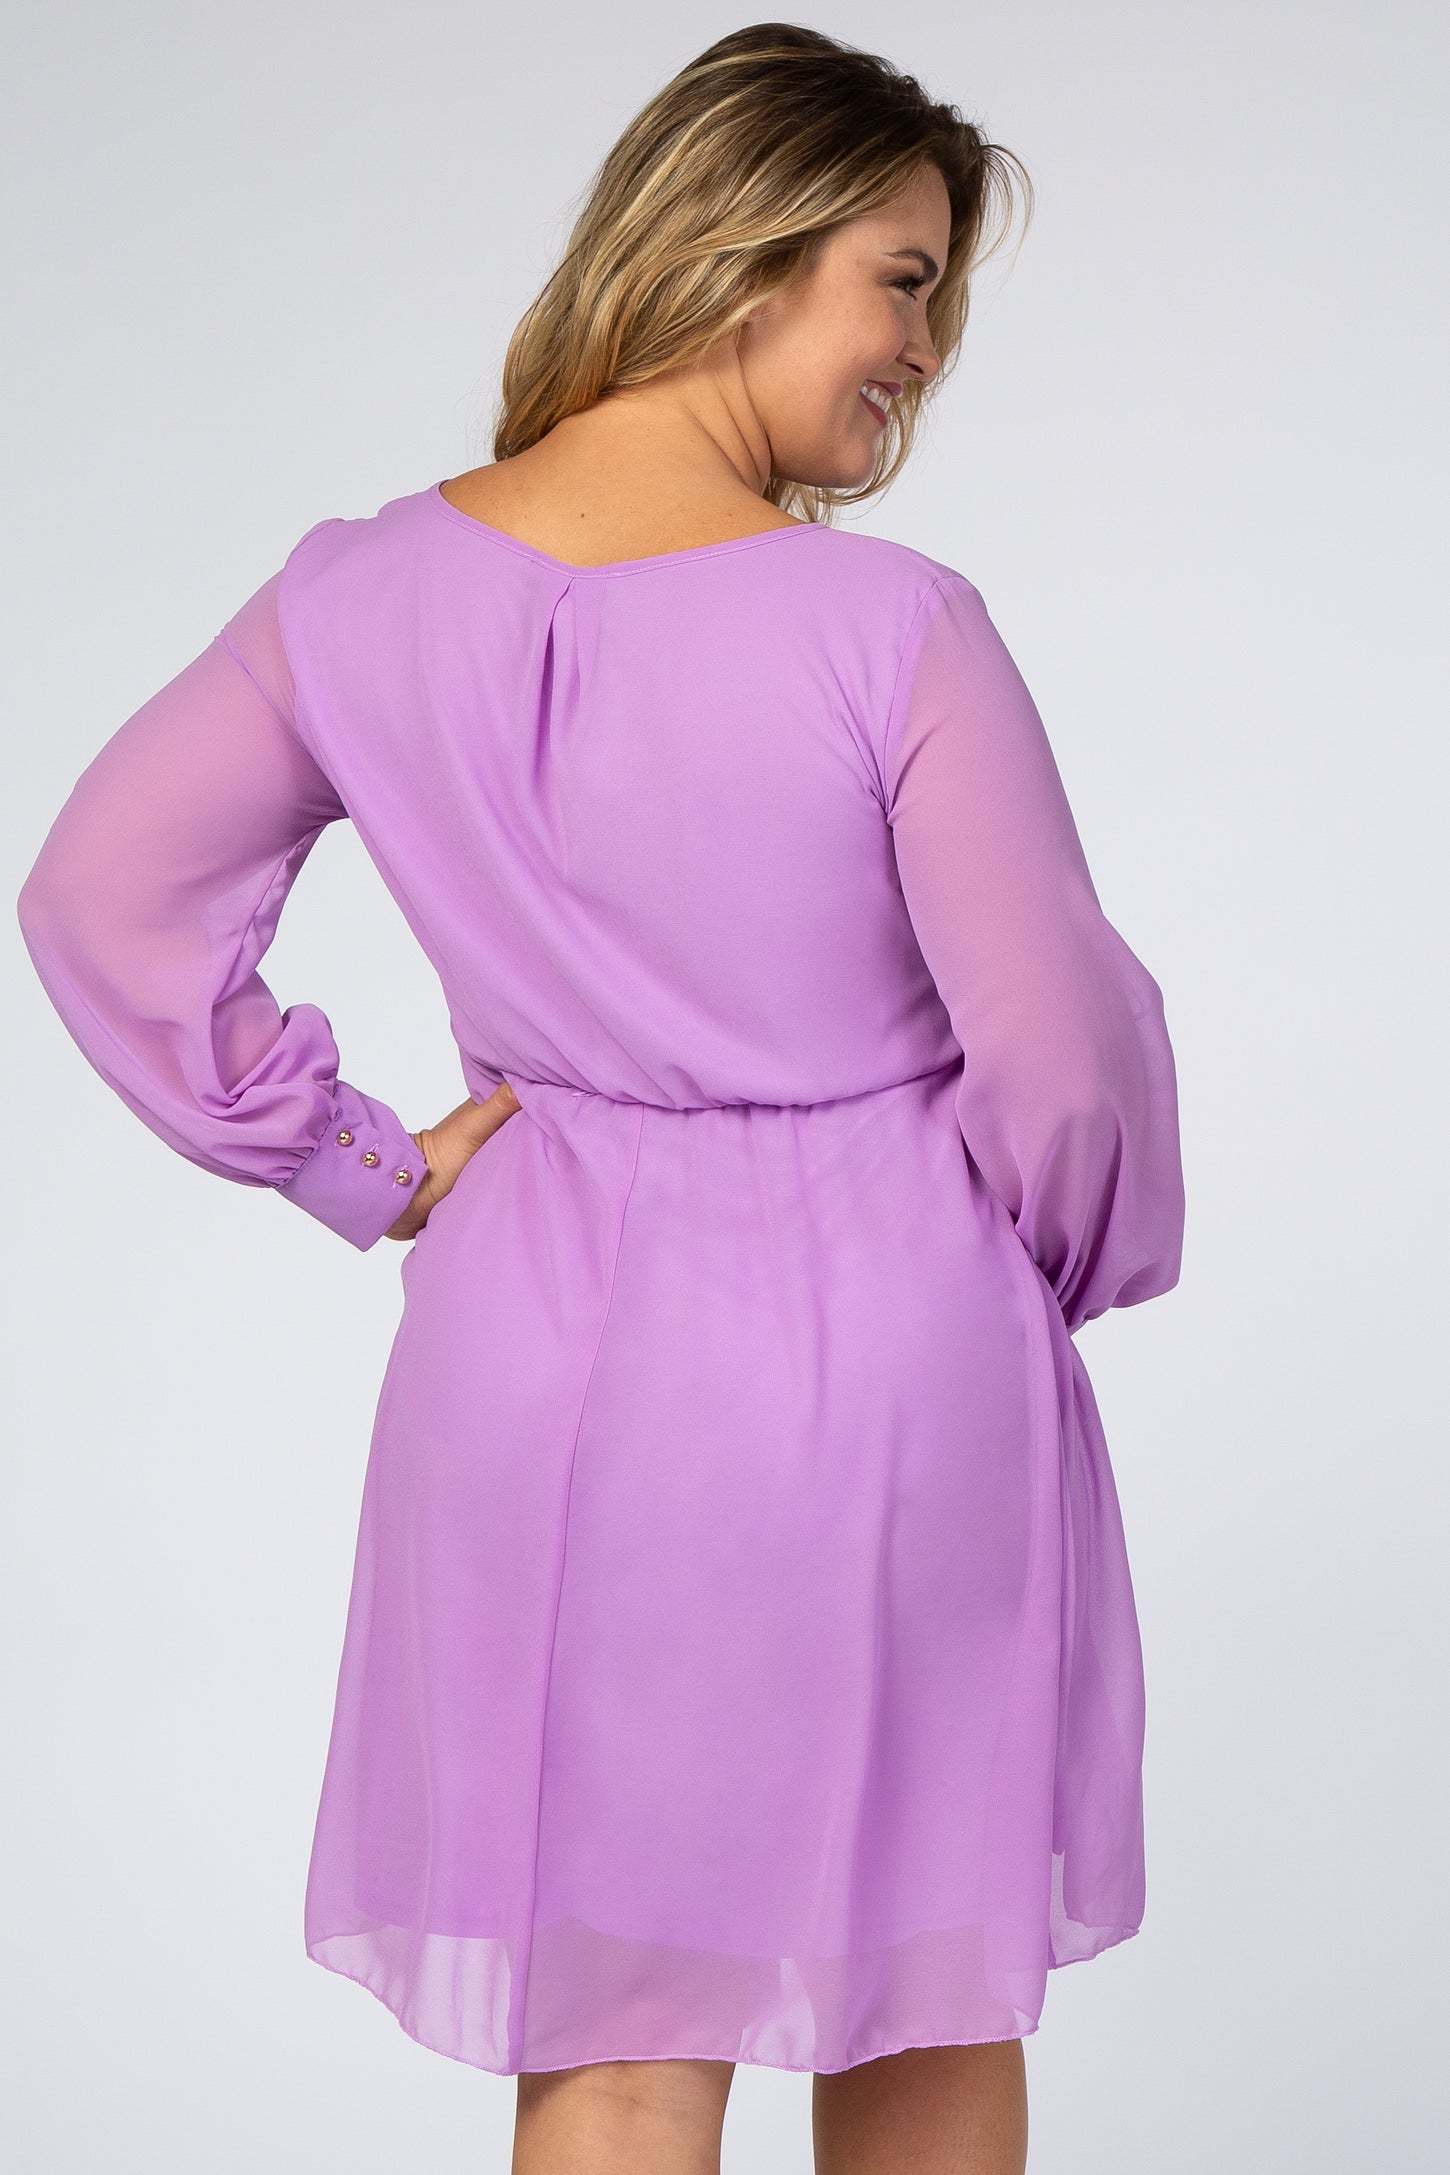 Lavender Chiffon Plus Maternity Wrap Dress